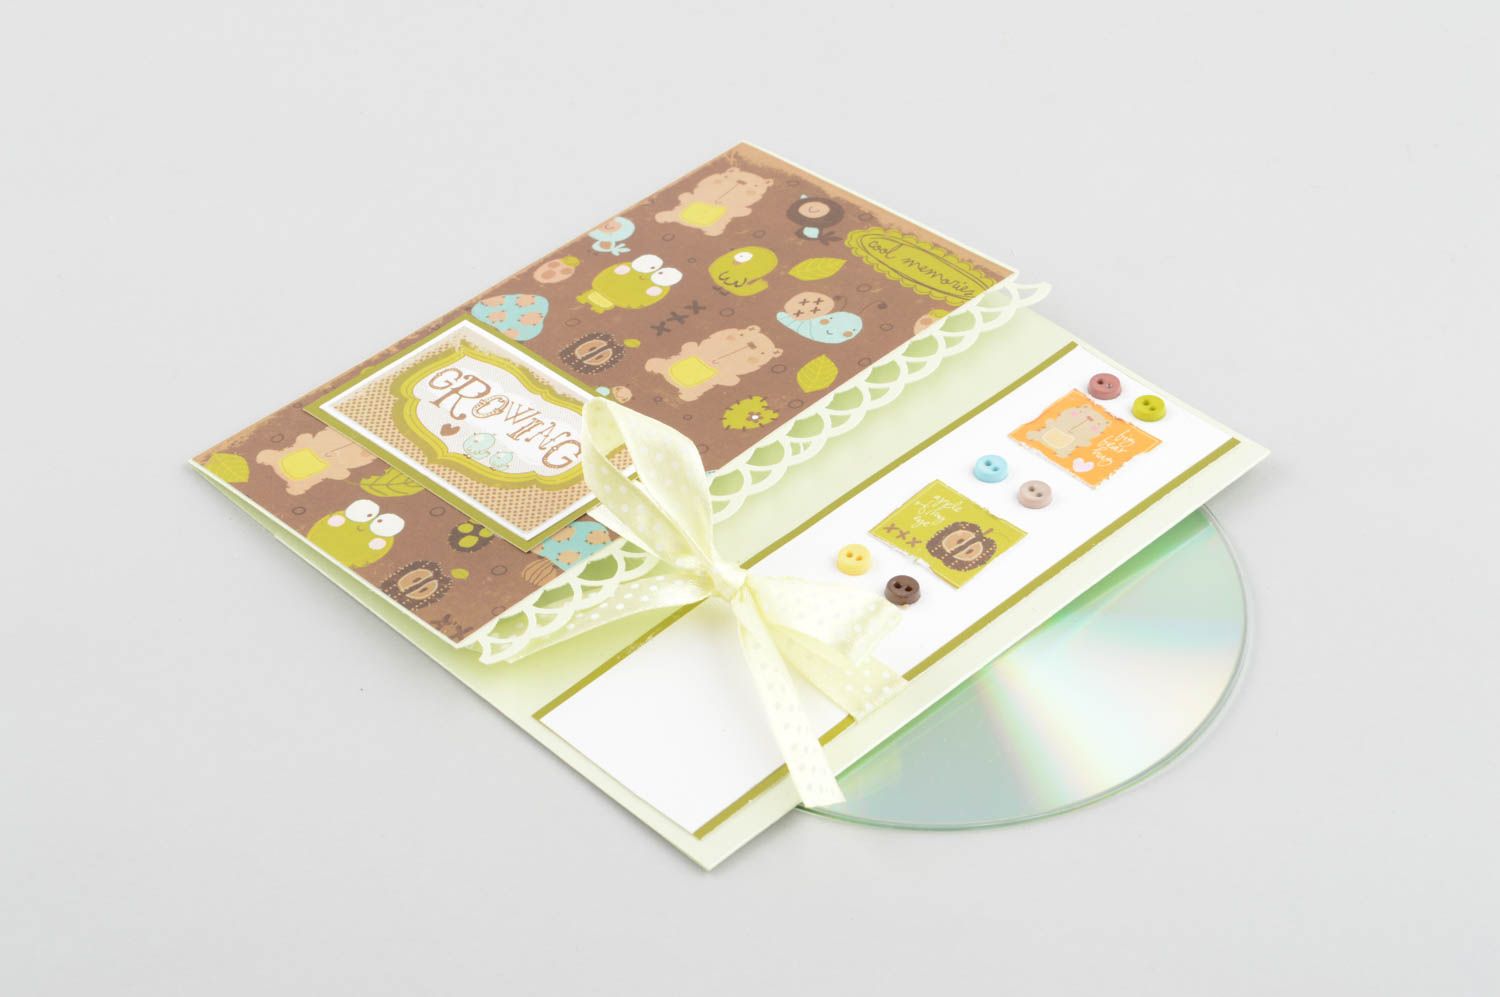 Handmade Papierhülle für CD kleines Geschenk CD Hülle mit Bildern bunt foto 2